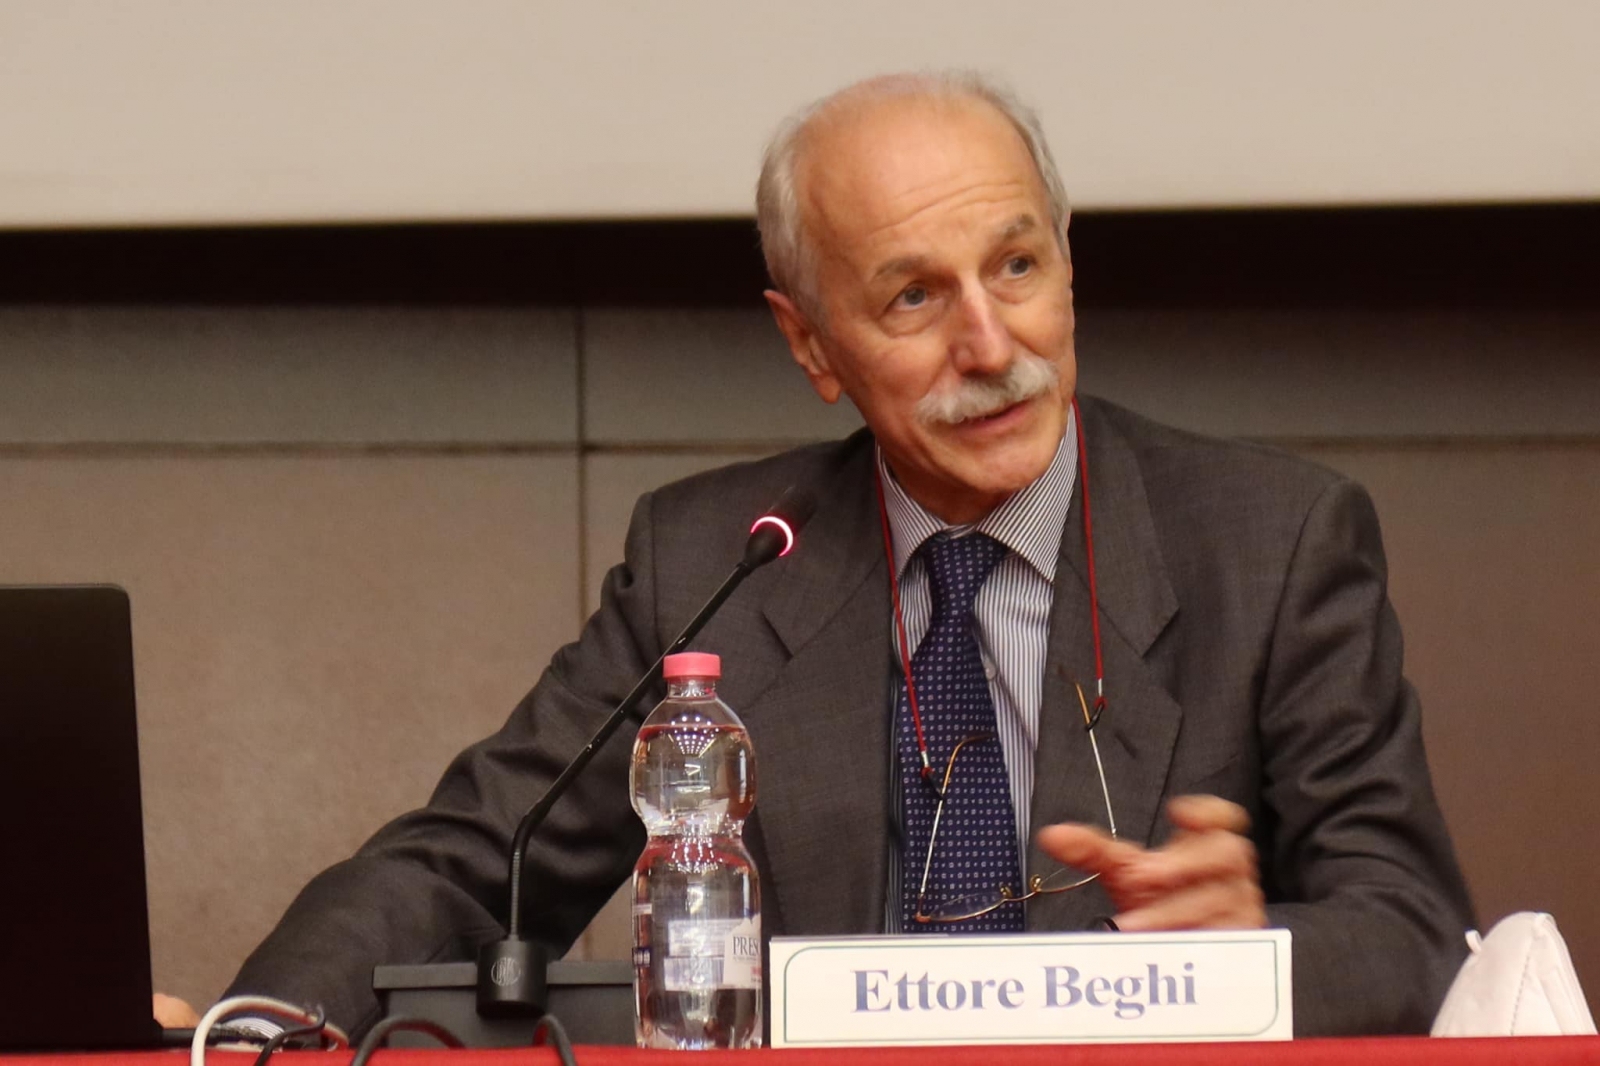 Ettore Beghi